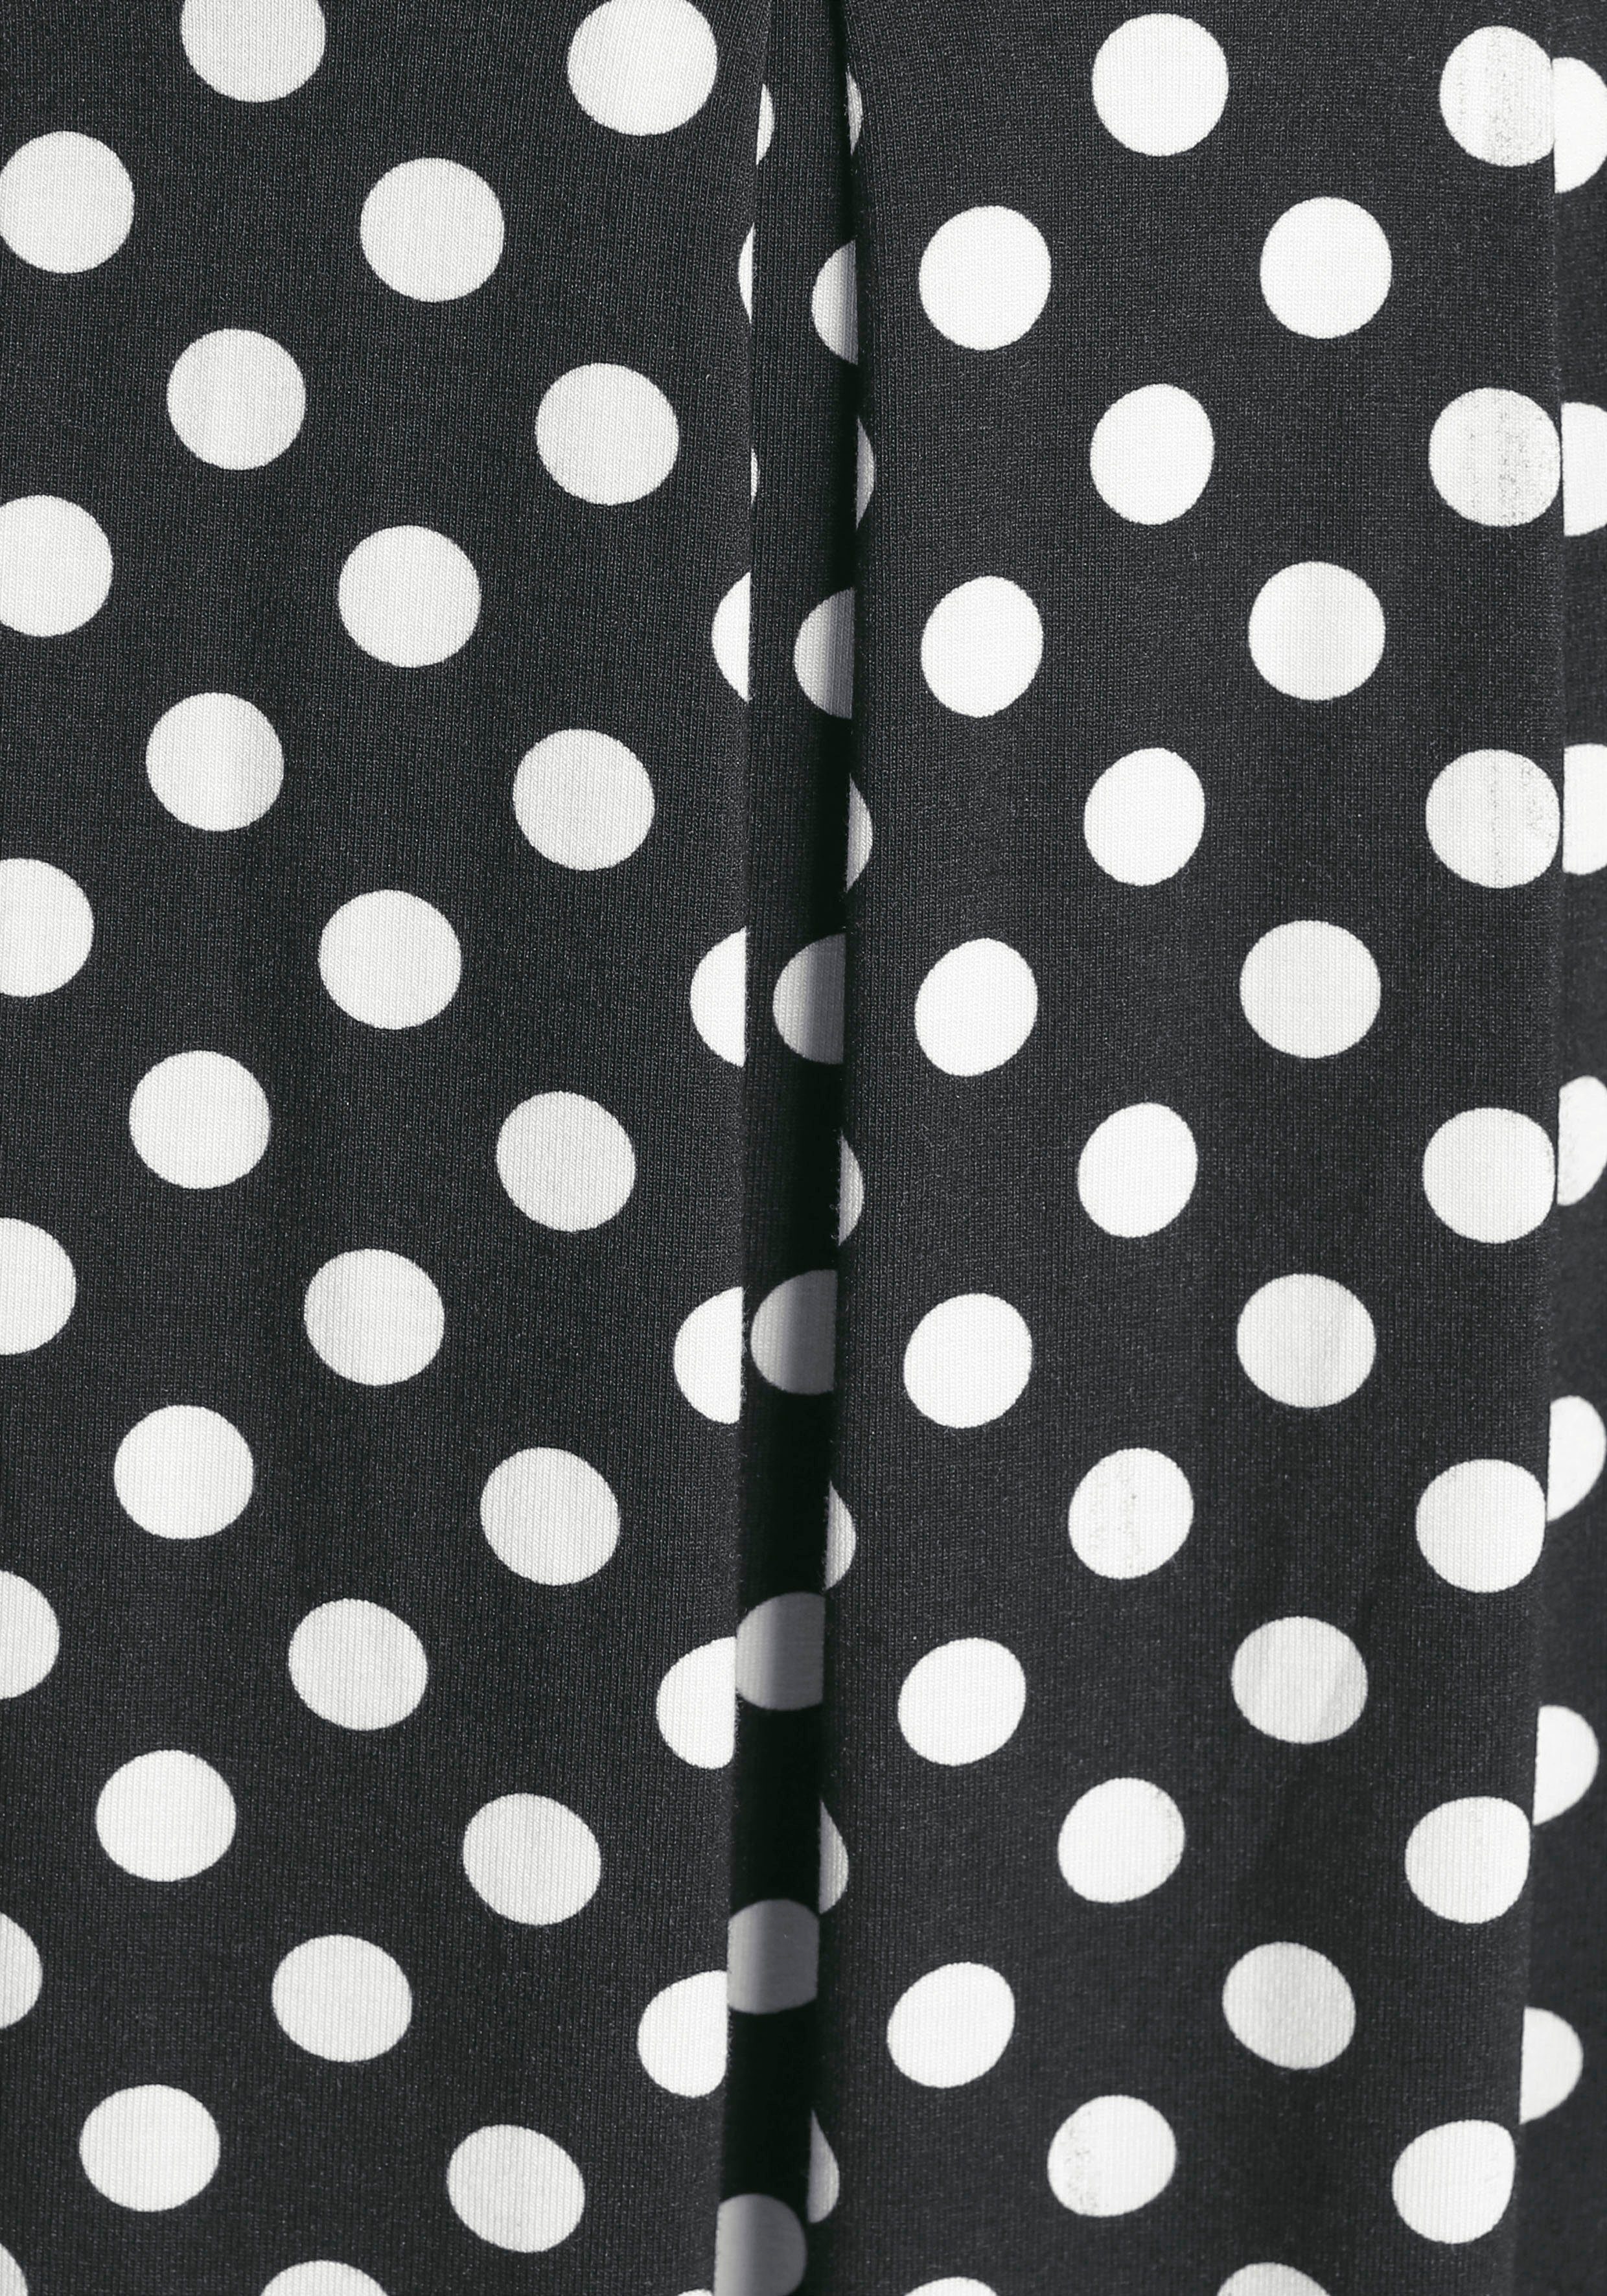 Boysen's Jerseykleid mit süßem Tupfen-Print weiß schwarz